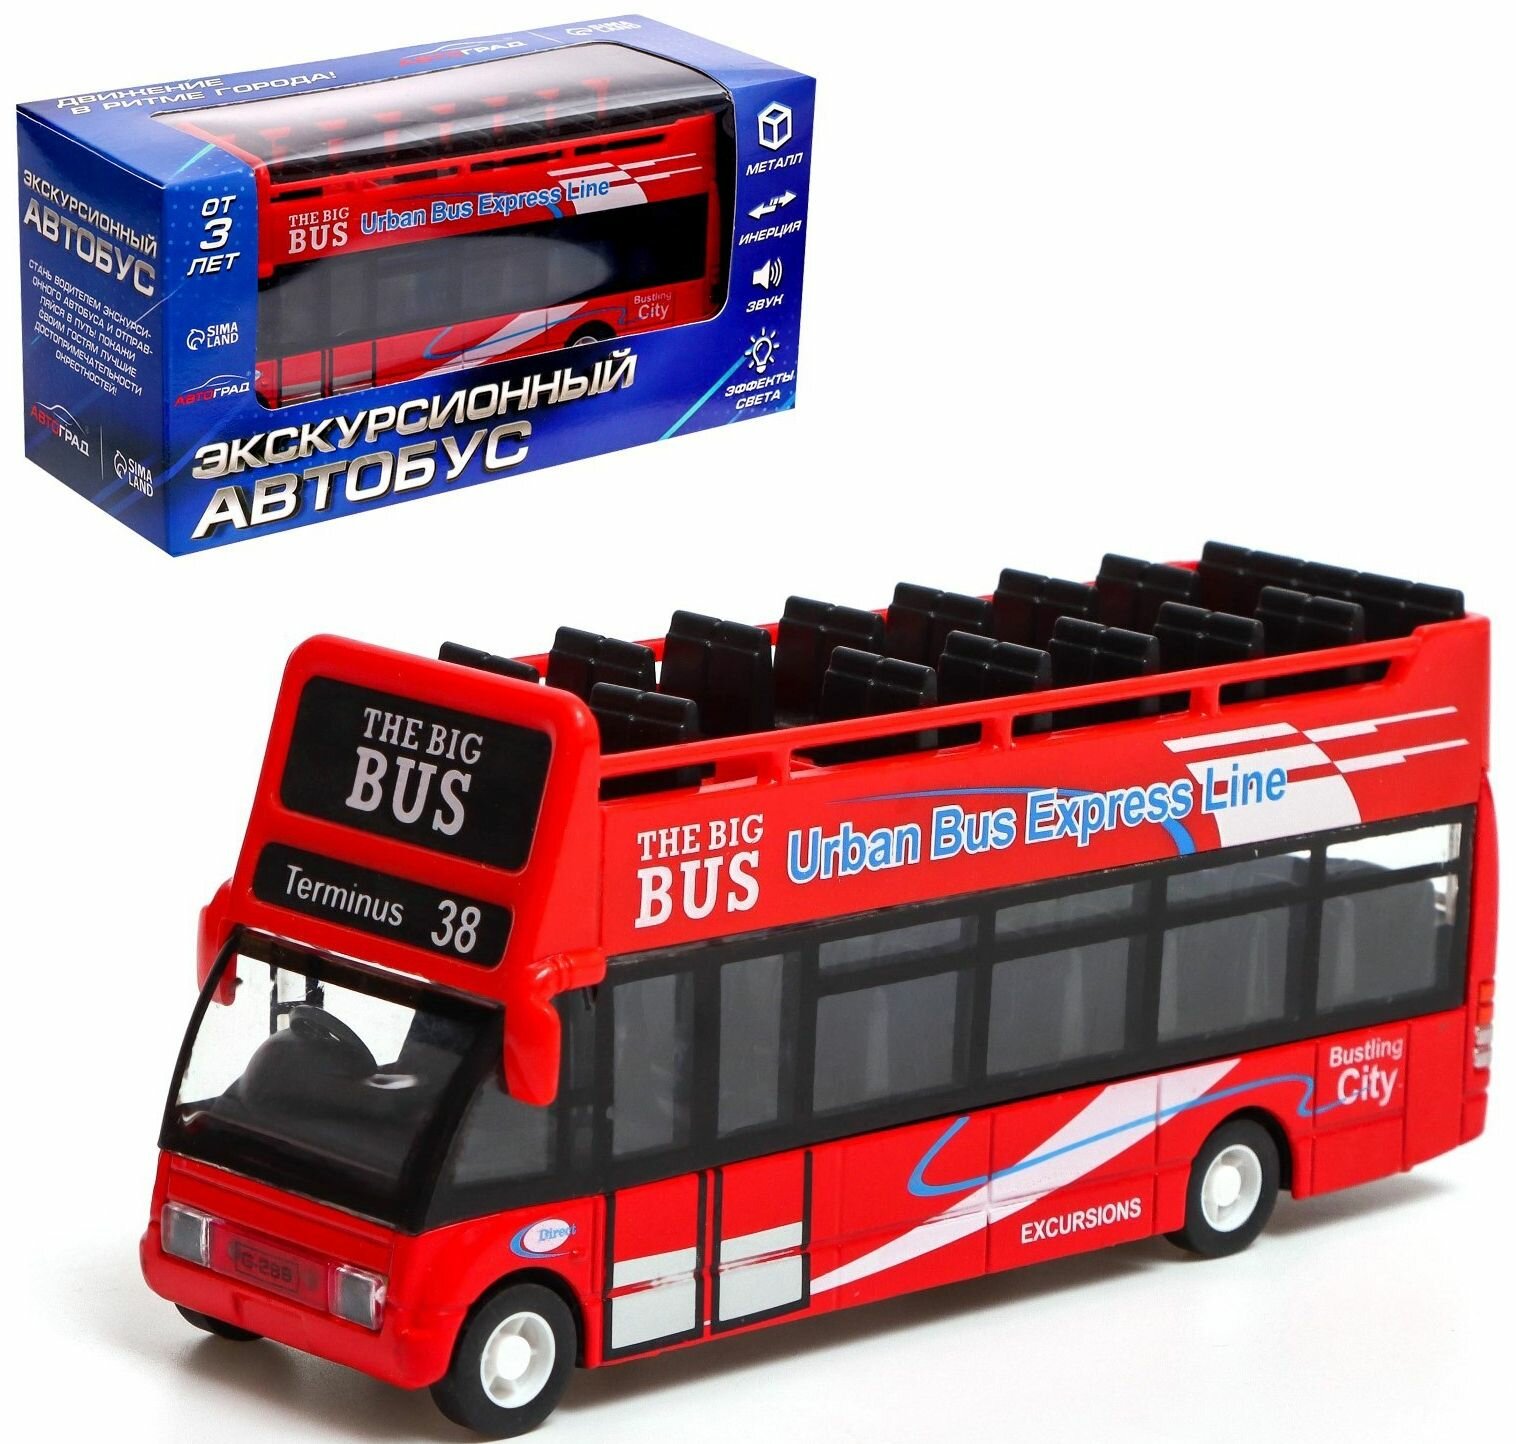 Автобус "Экскурсионный" инерционный, металлическая модель, игрушечный транспорт со световыми и звуковыми эффектами, цвет красный